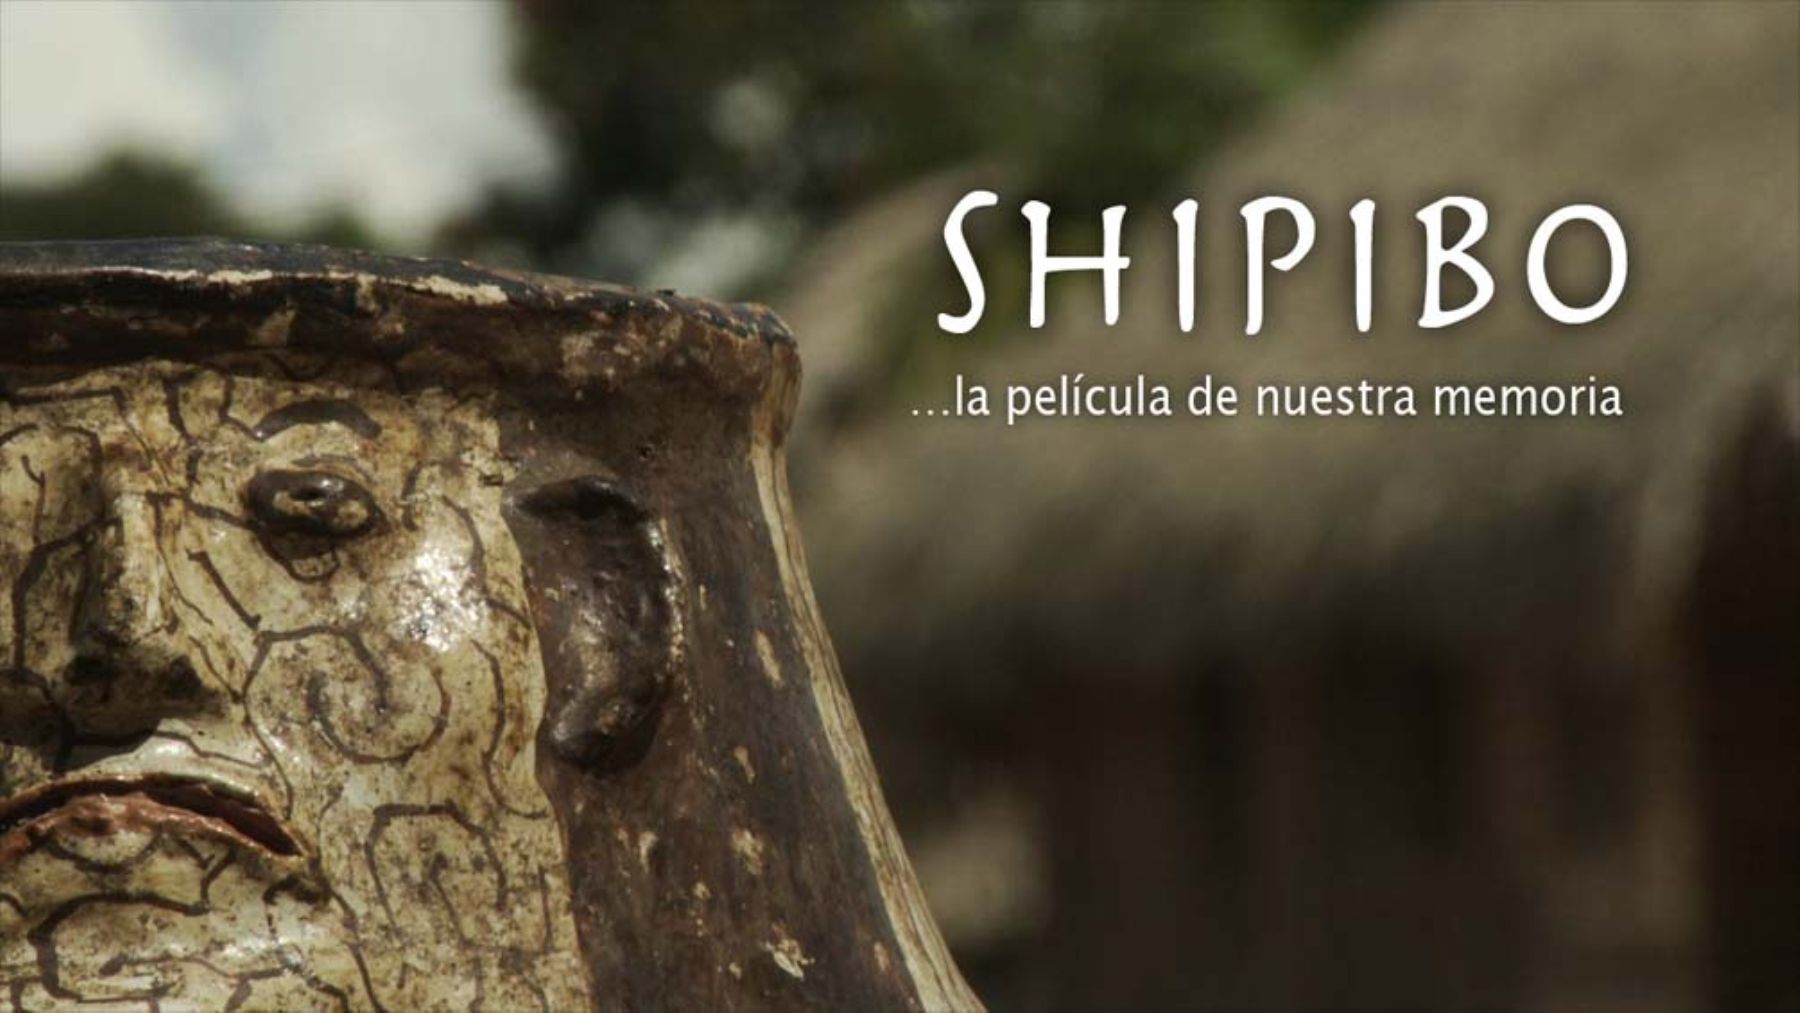 Shipibo es uno de los documentales que se exhibirá en la Biblioteca Nacional del Perú.